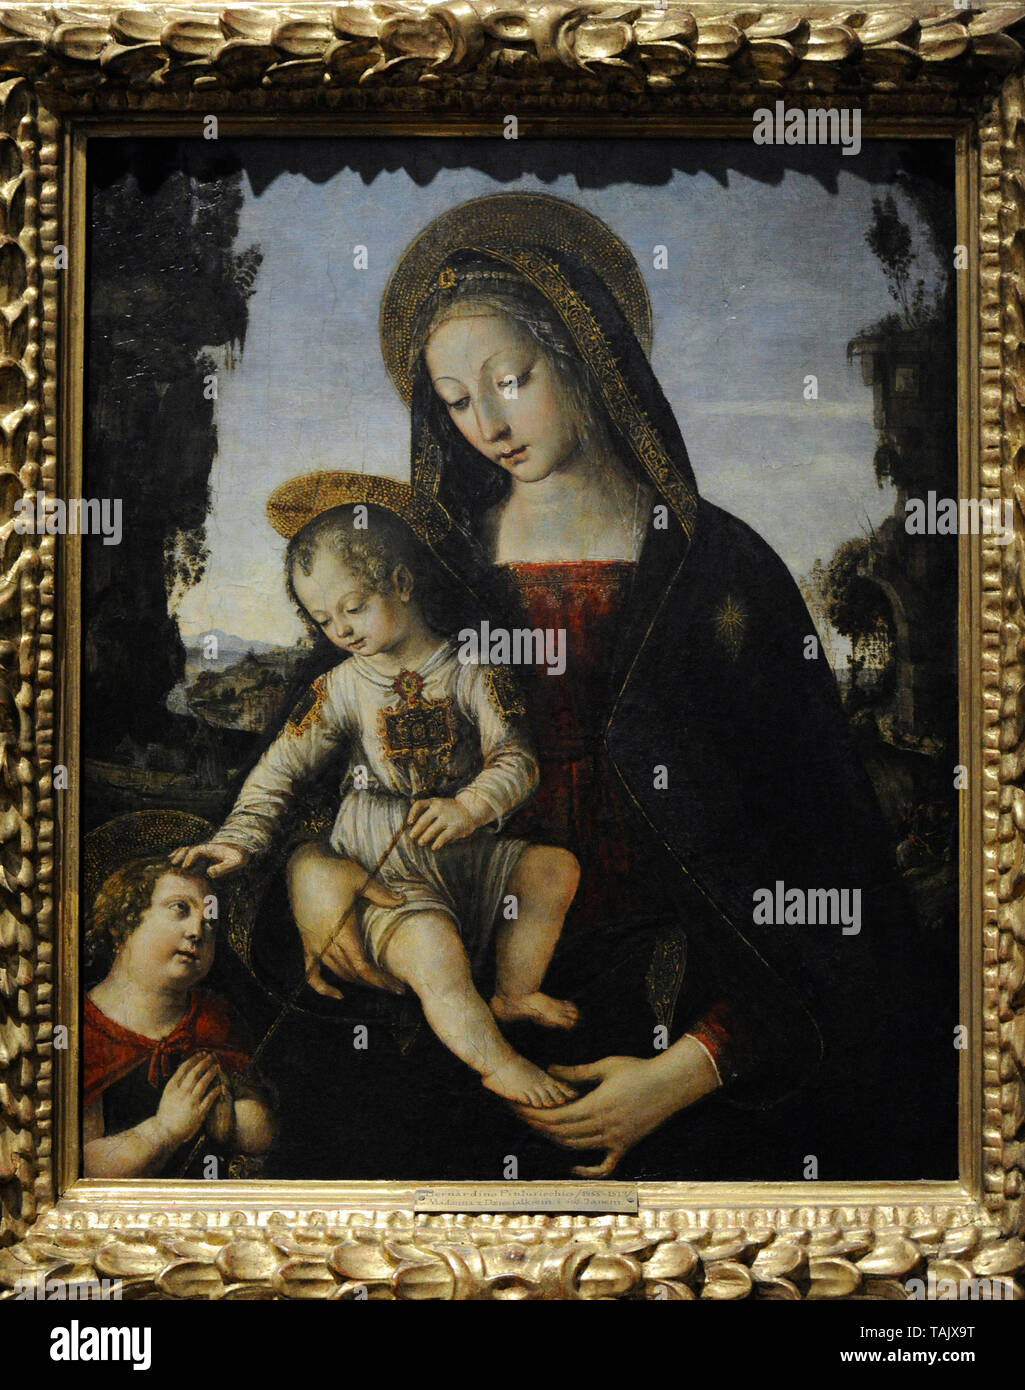 Bernardino di Betto, appelé Pinturicchio (ca.1452-1513). Peintre italien. La Vierge et l'enfant avec Saint Jean Baptiste. Musée national. Varsovie. La Pologne. Banque D'Images